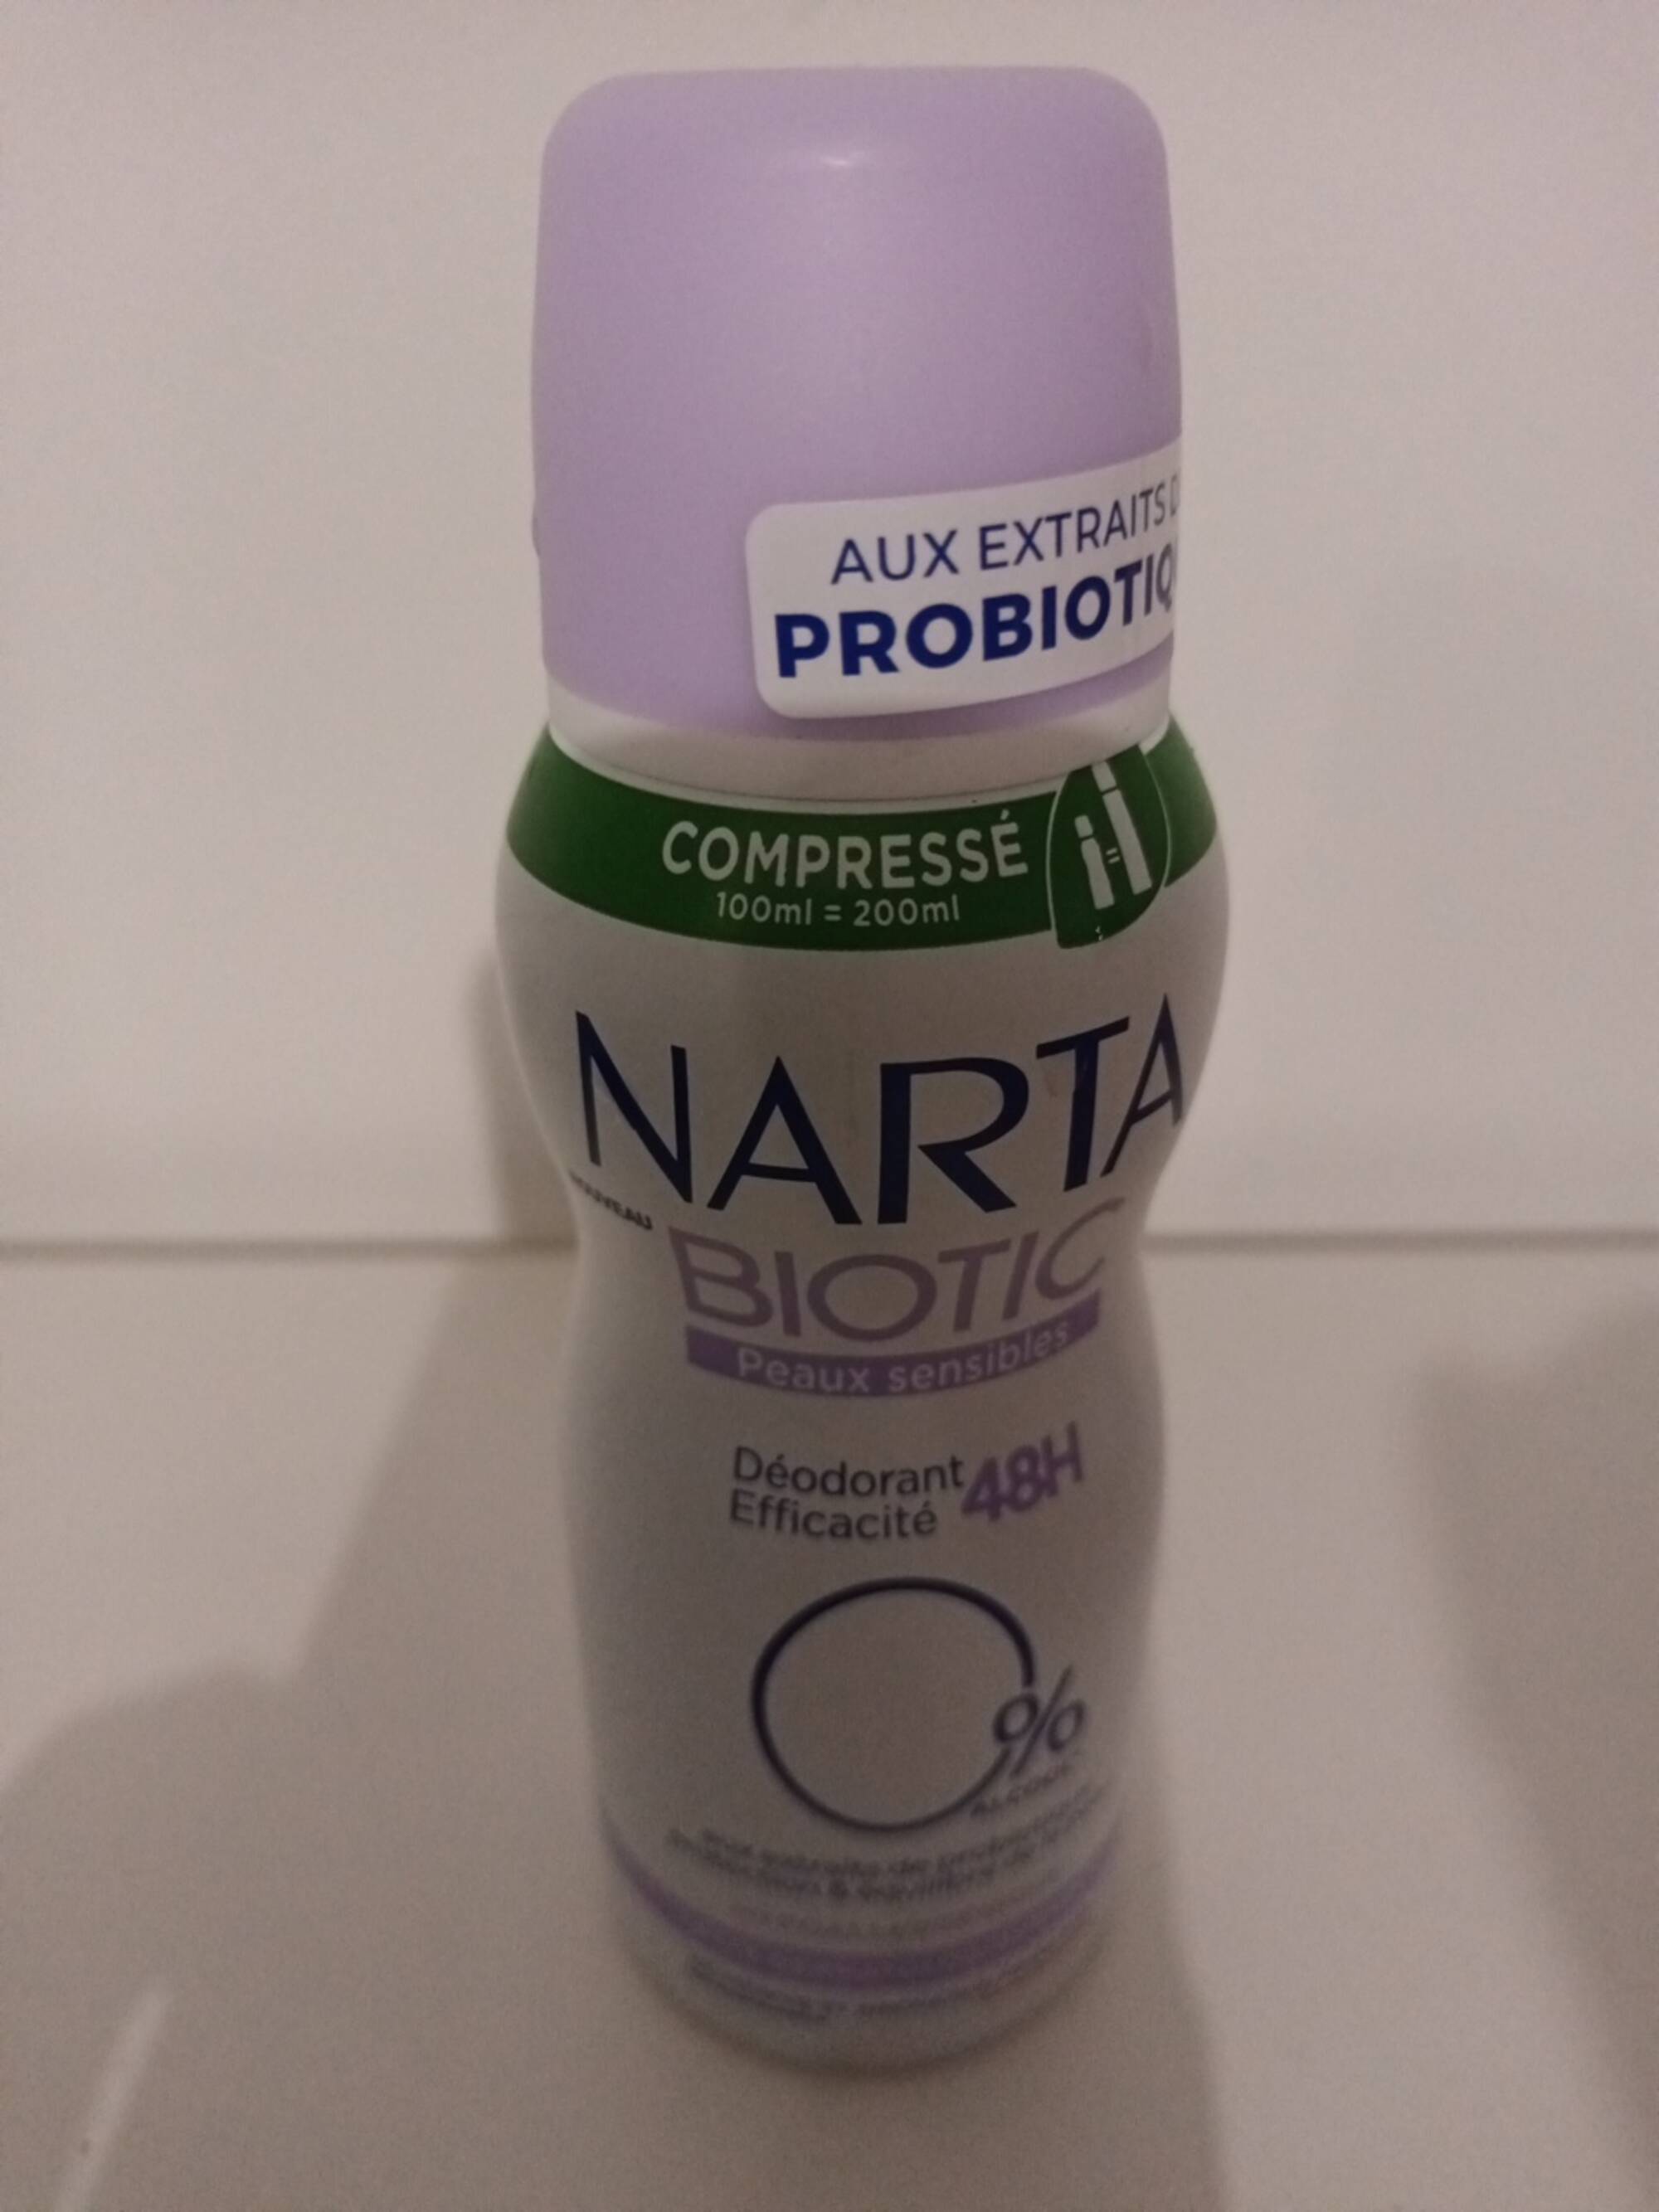 NARTA - Biotic peaux sensibles 